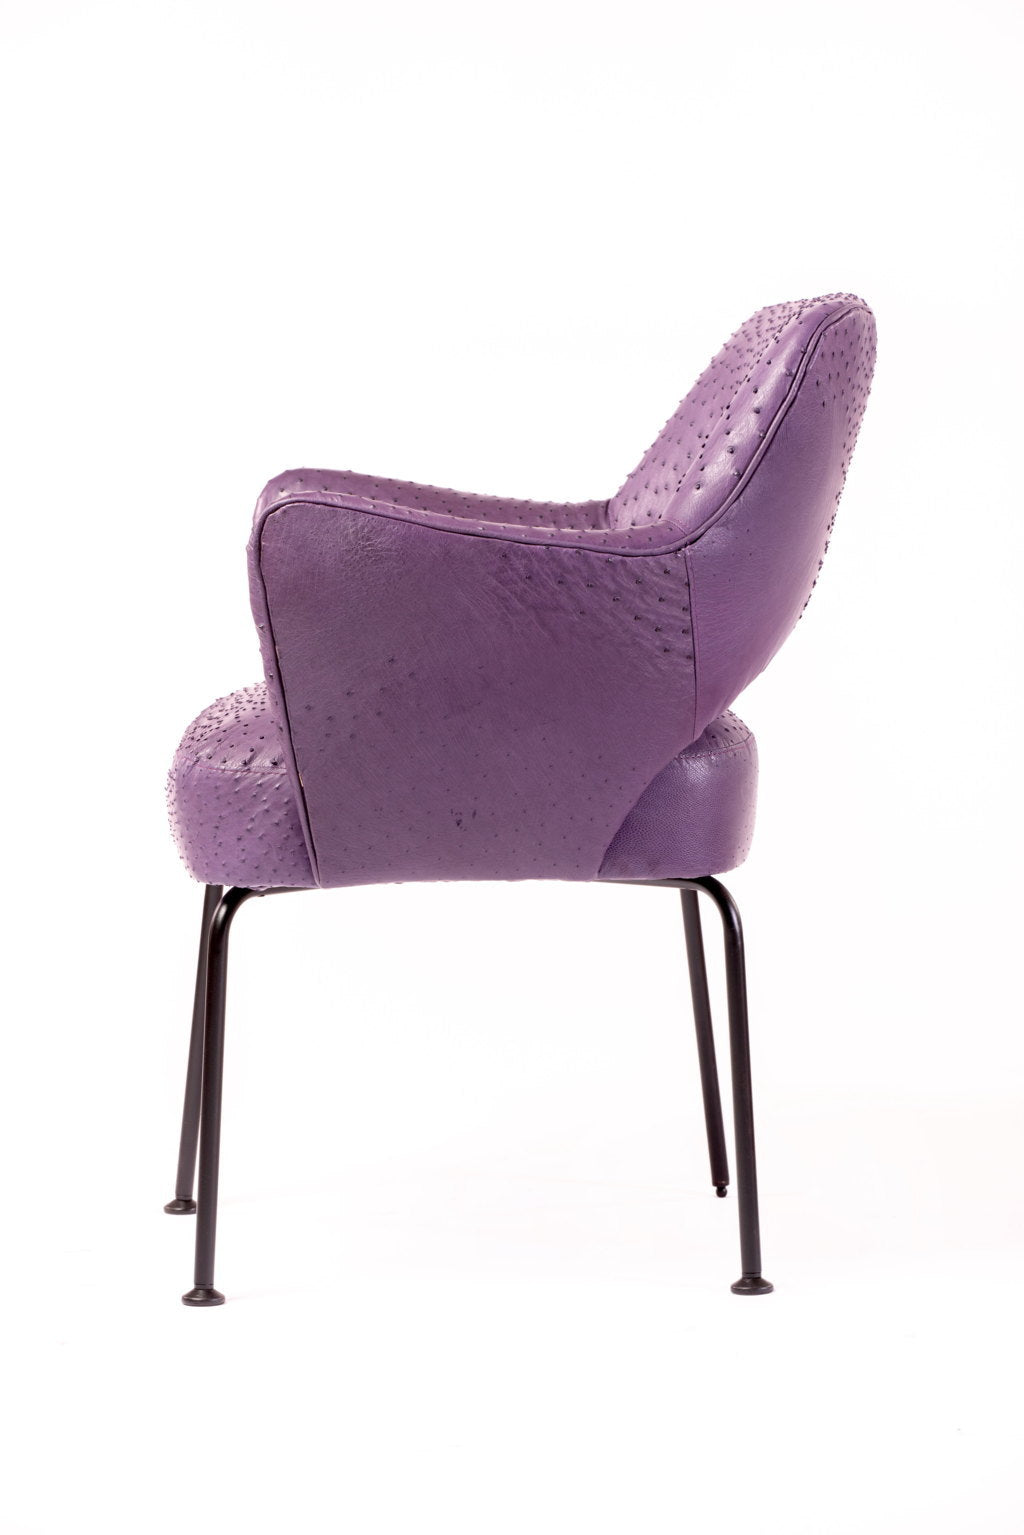 Mobiltecnica design ostrich armchair